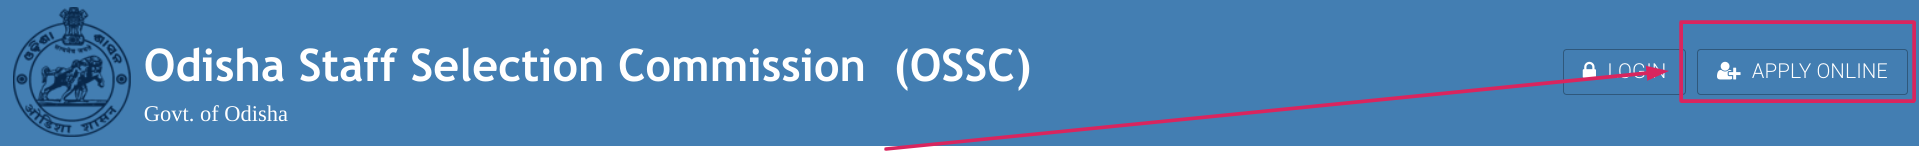 OSSC Apply Online Option